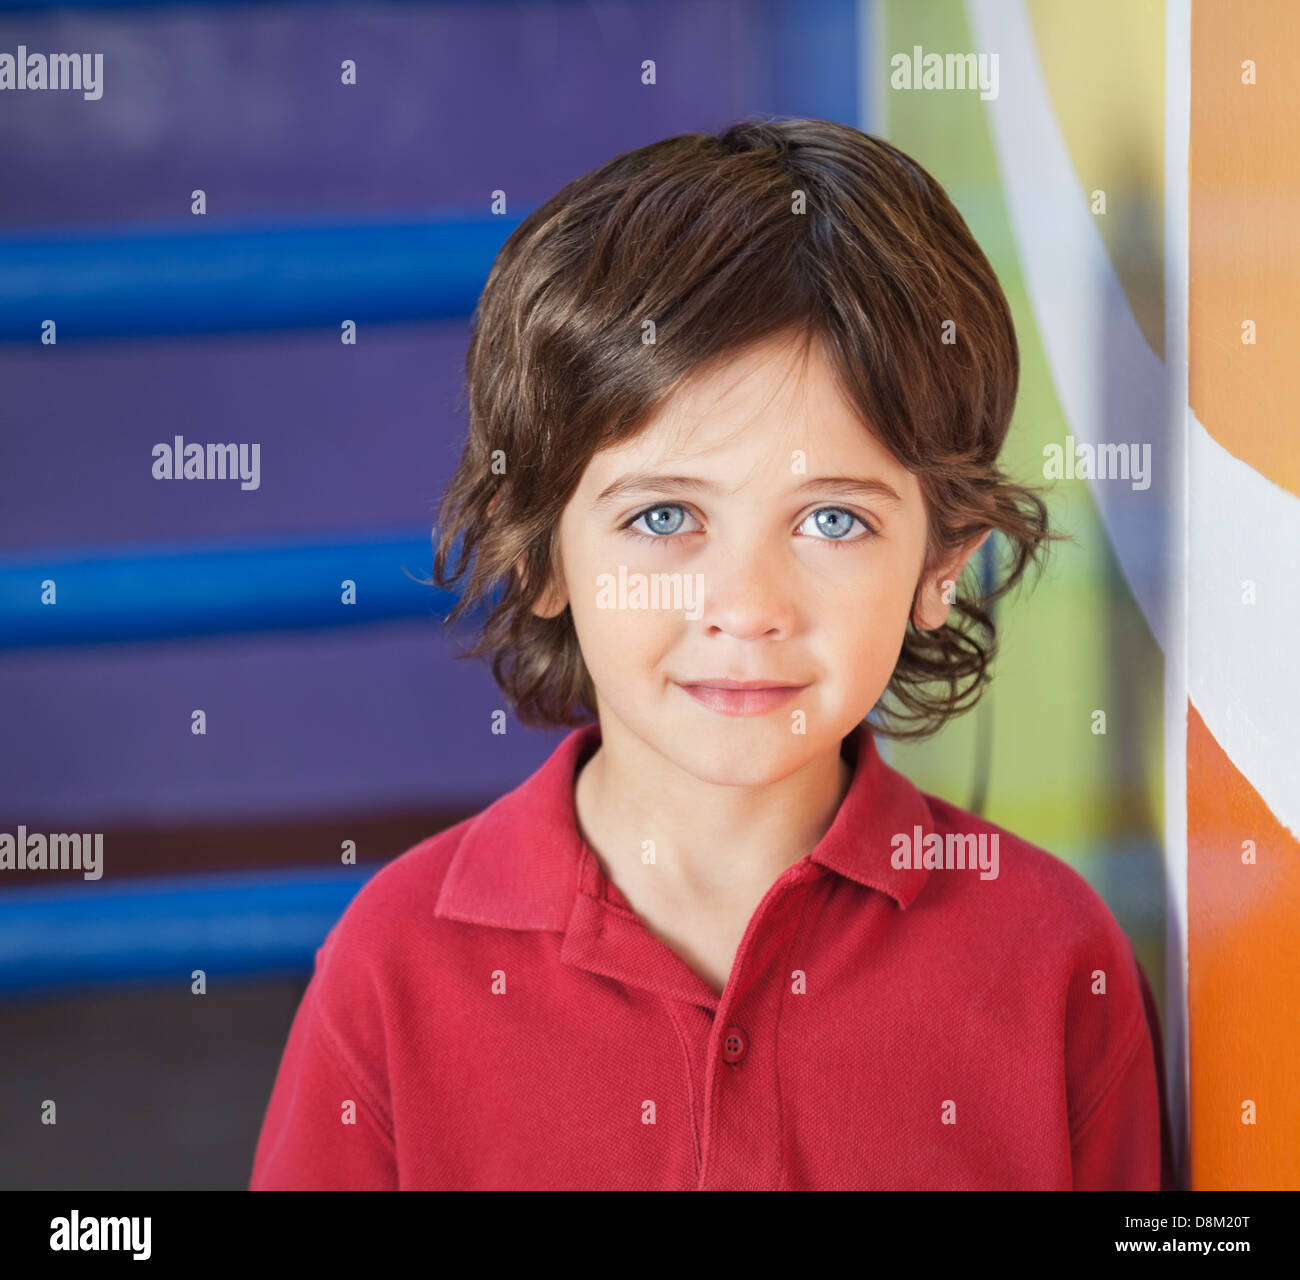 Boy In Casuals Smiling In Preschool Stock Photo